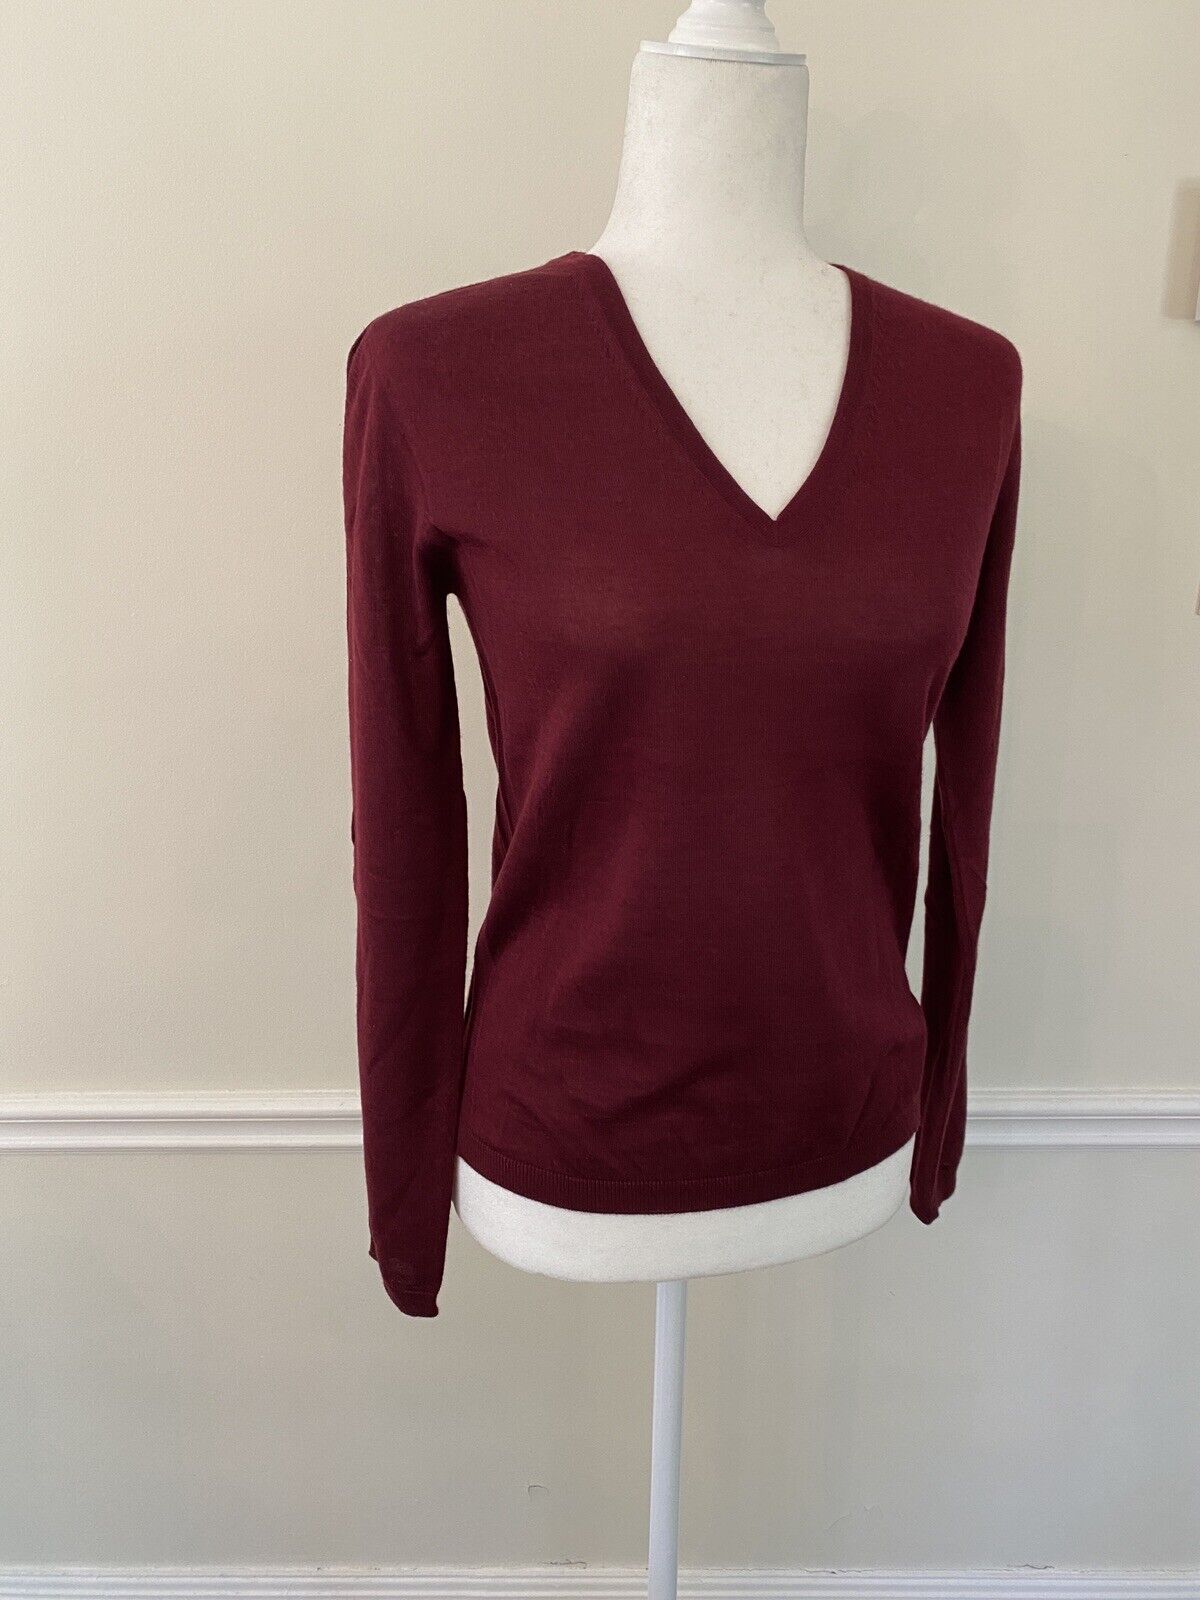 ELEGANT JIL SANDER Sweater Burgundy Cashmere Silk V-Neck Size 36